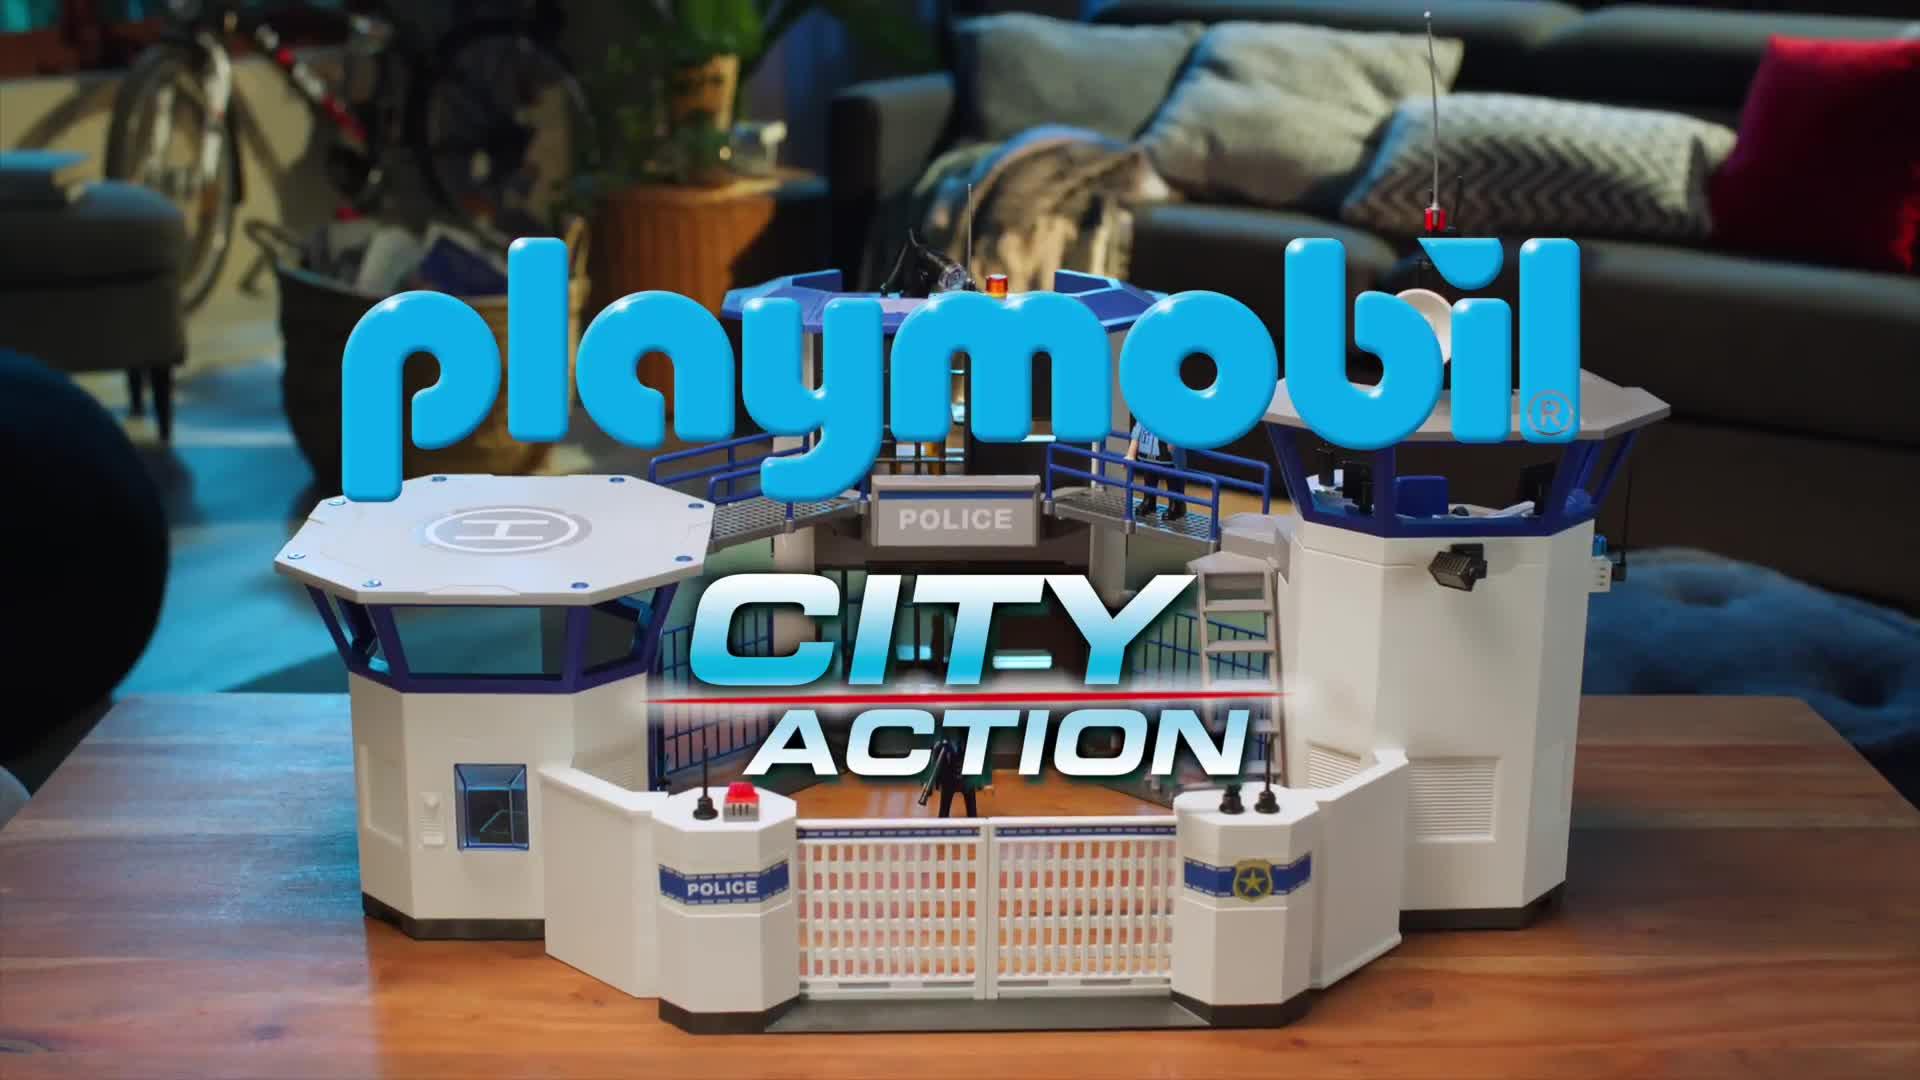 Playmobil City Action Commissariat de Police avec Prison 6919 - Monsieur  Jouet